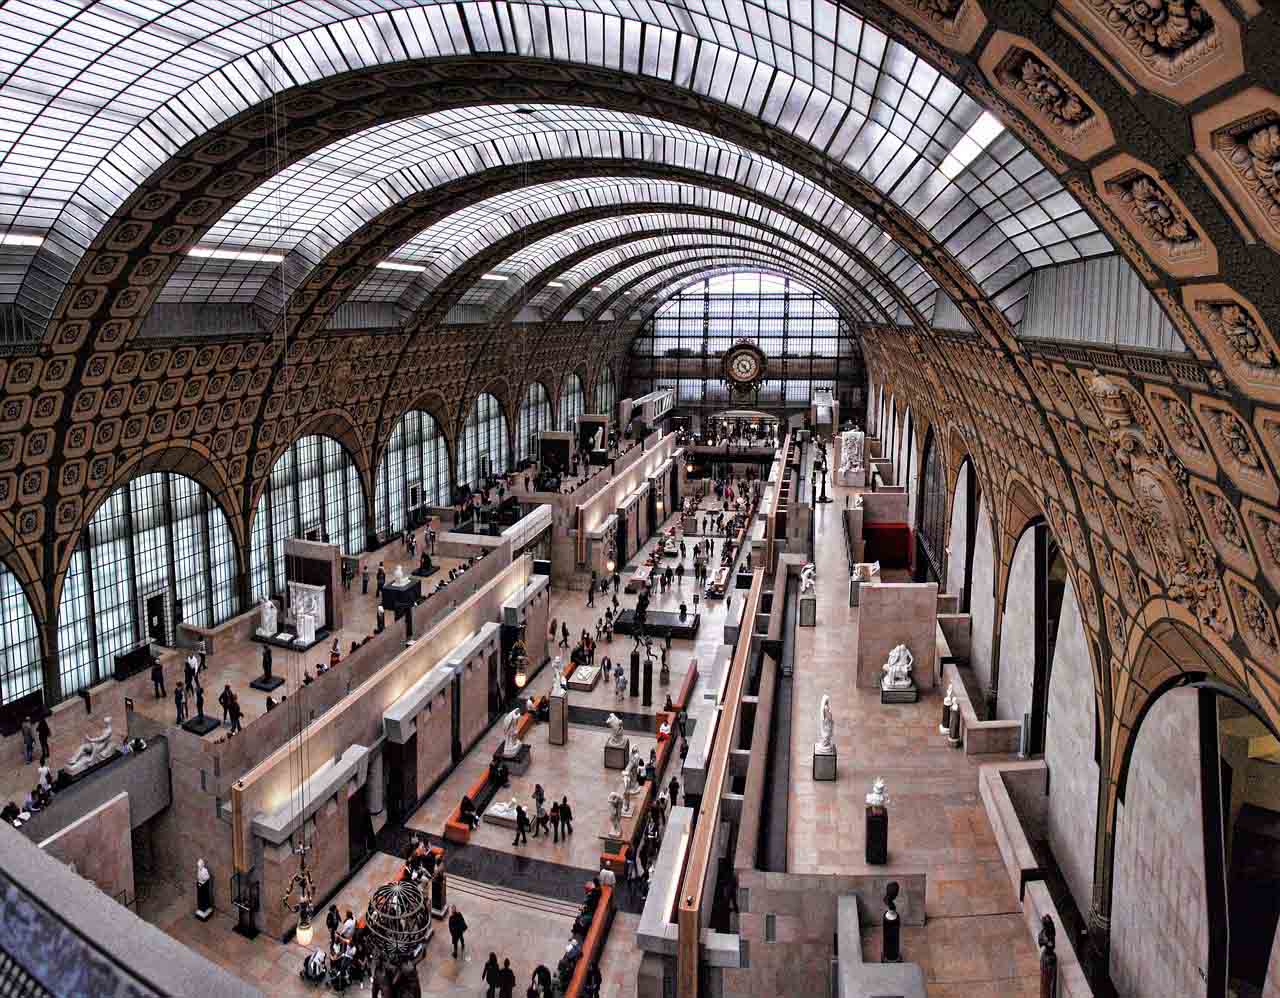 Paris Orsay Museum